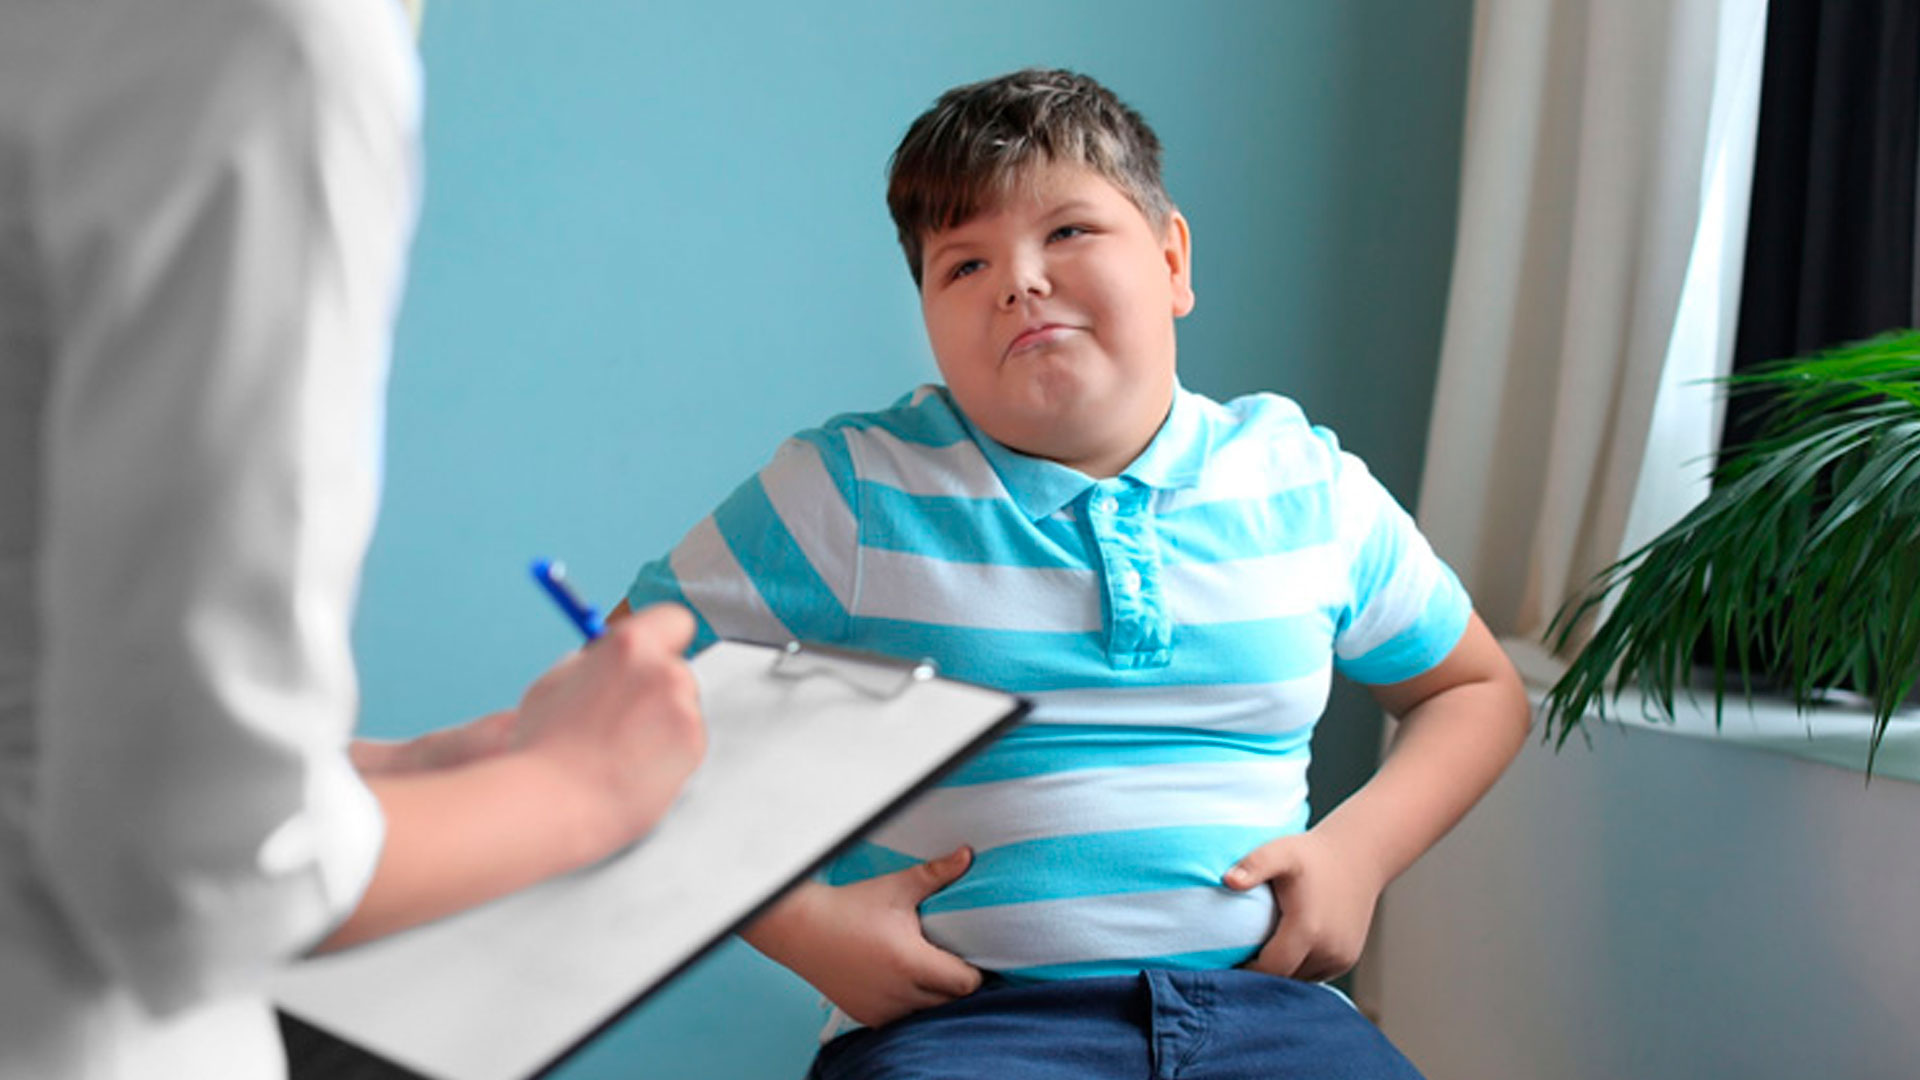 Obesità e sovrappeso nei bambini, rischio associato al consumo materno di alimenti ultra-elaborati. Studio su BMJ